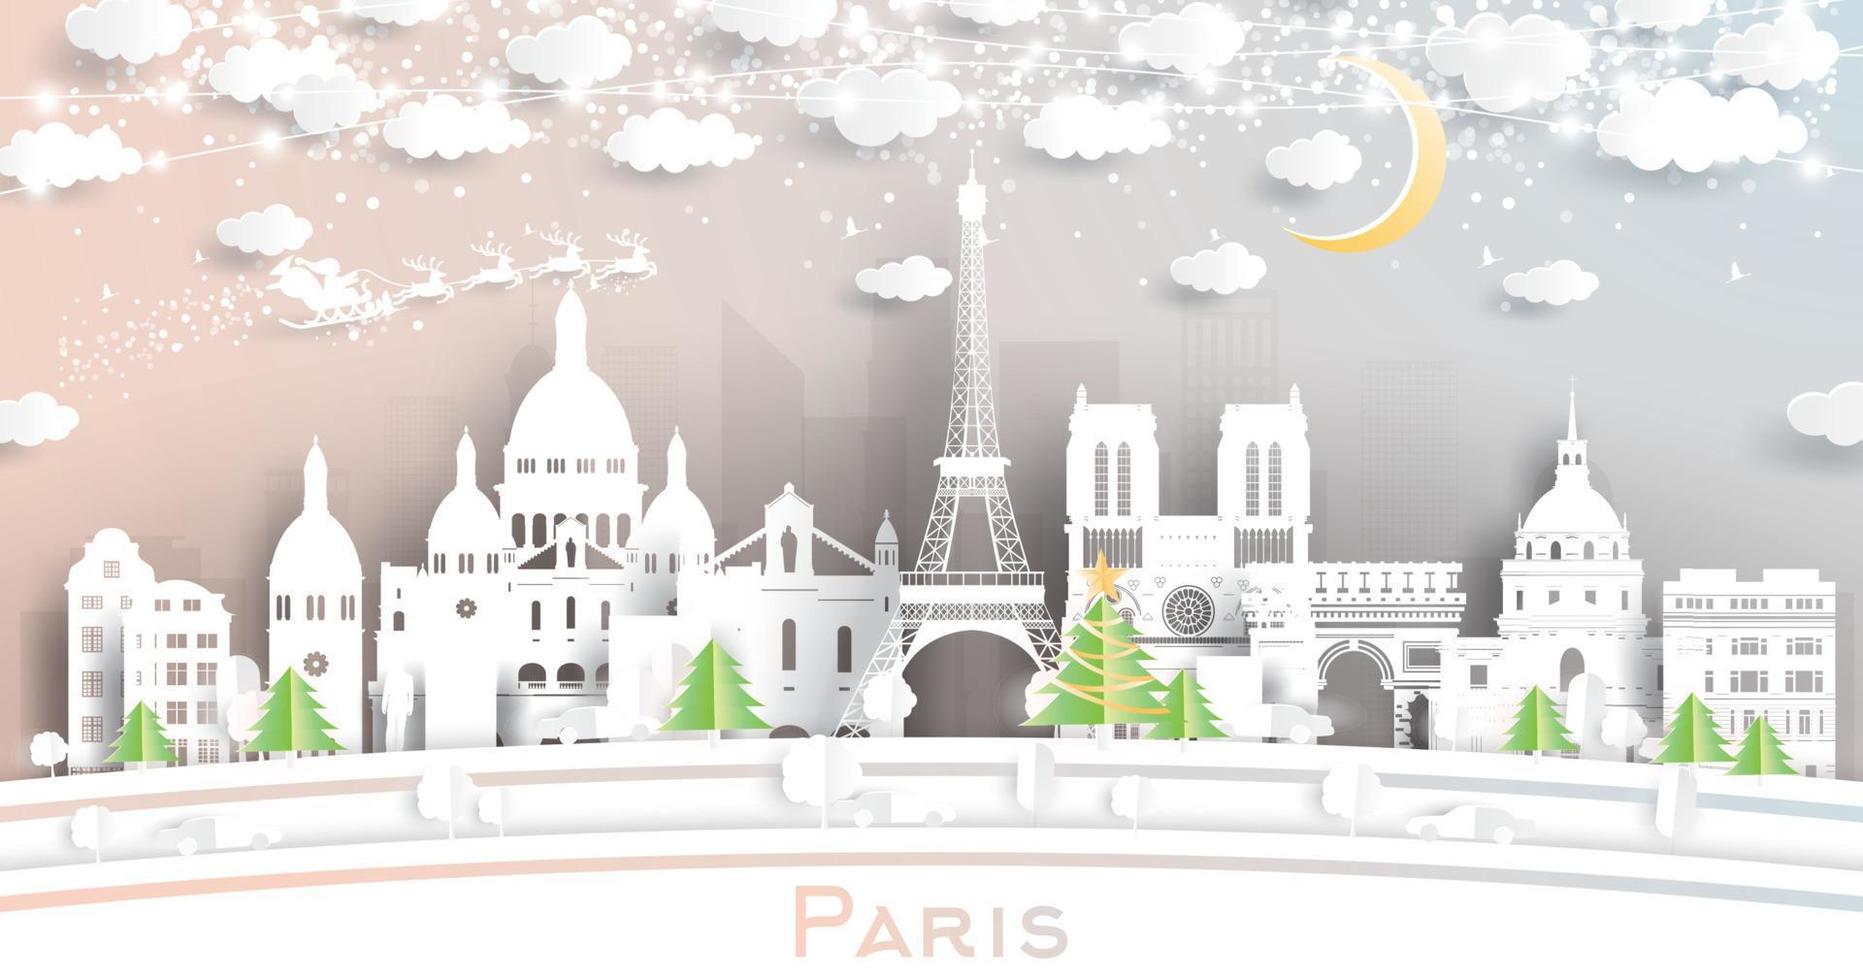 Parijs Frankrijk stad horizon in papier besnoeiing stijl met sneeuwvlokken, maan en neon guirlande. vector